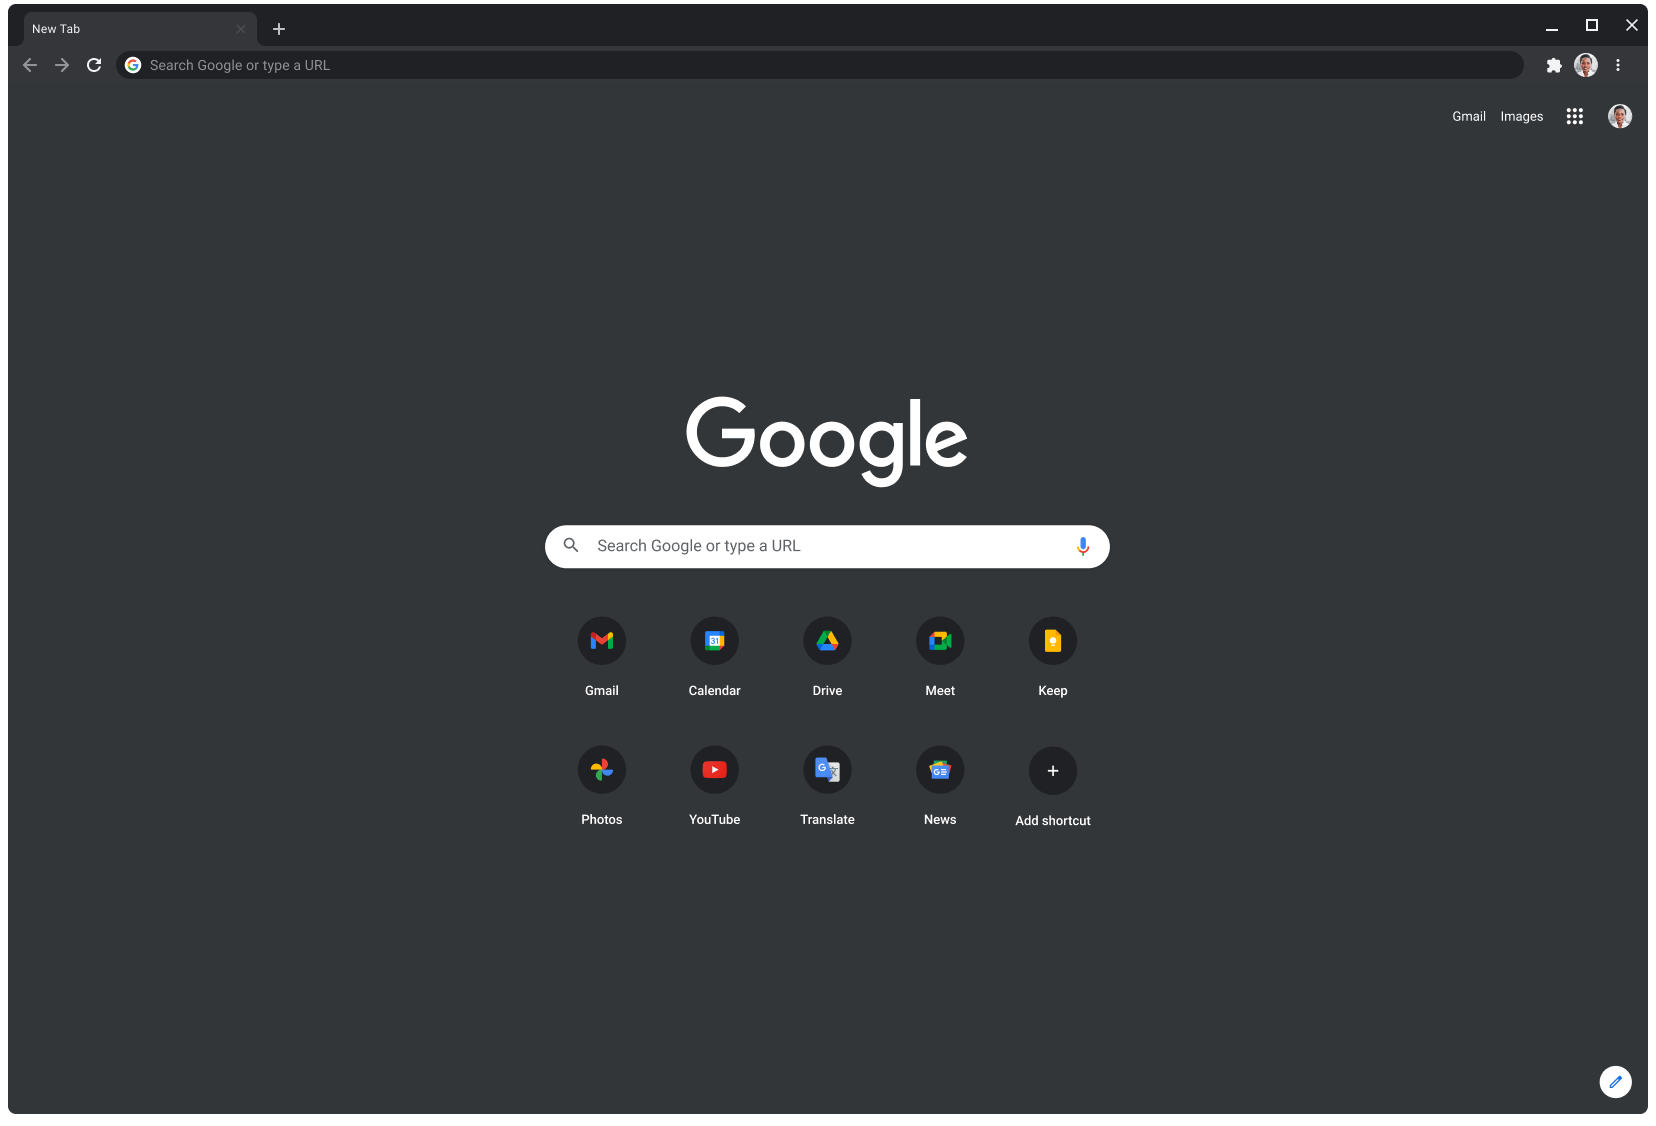 Παράθυρο του προγράμματος περιήγησης Chrome στη Λειτουργία χαμηλού φωτισμού. Στο παράθυρο εμφανίζεται ο ιστότοπος Google.com.